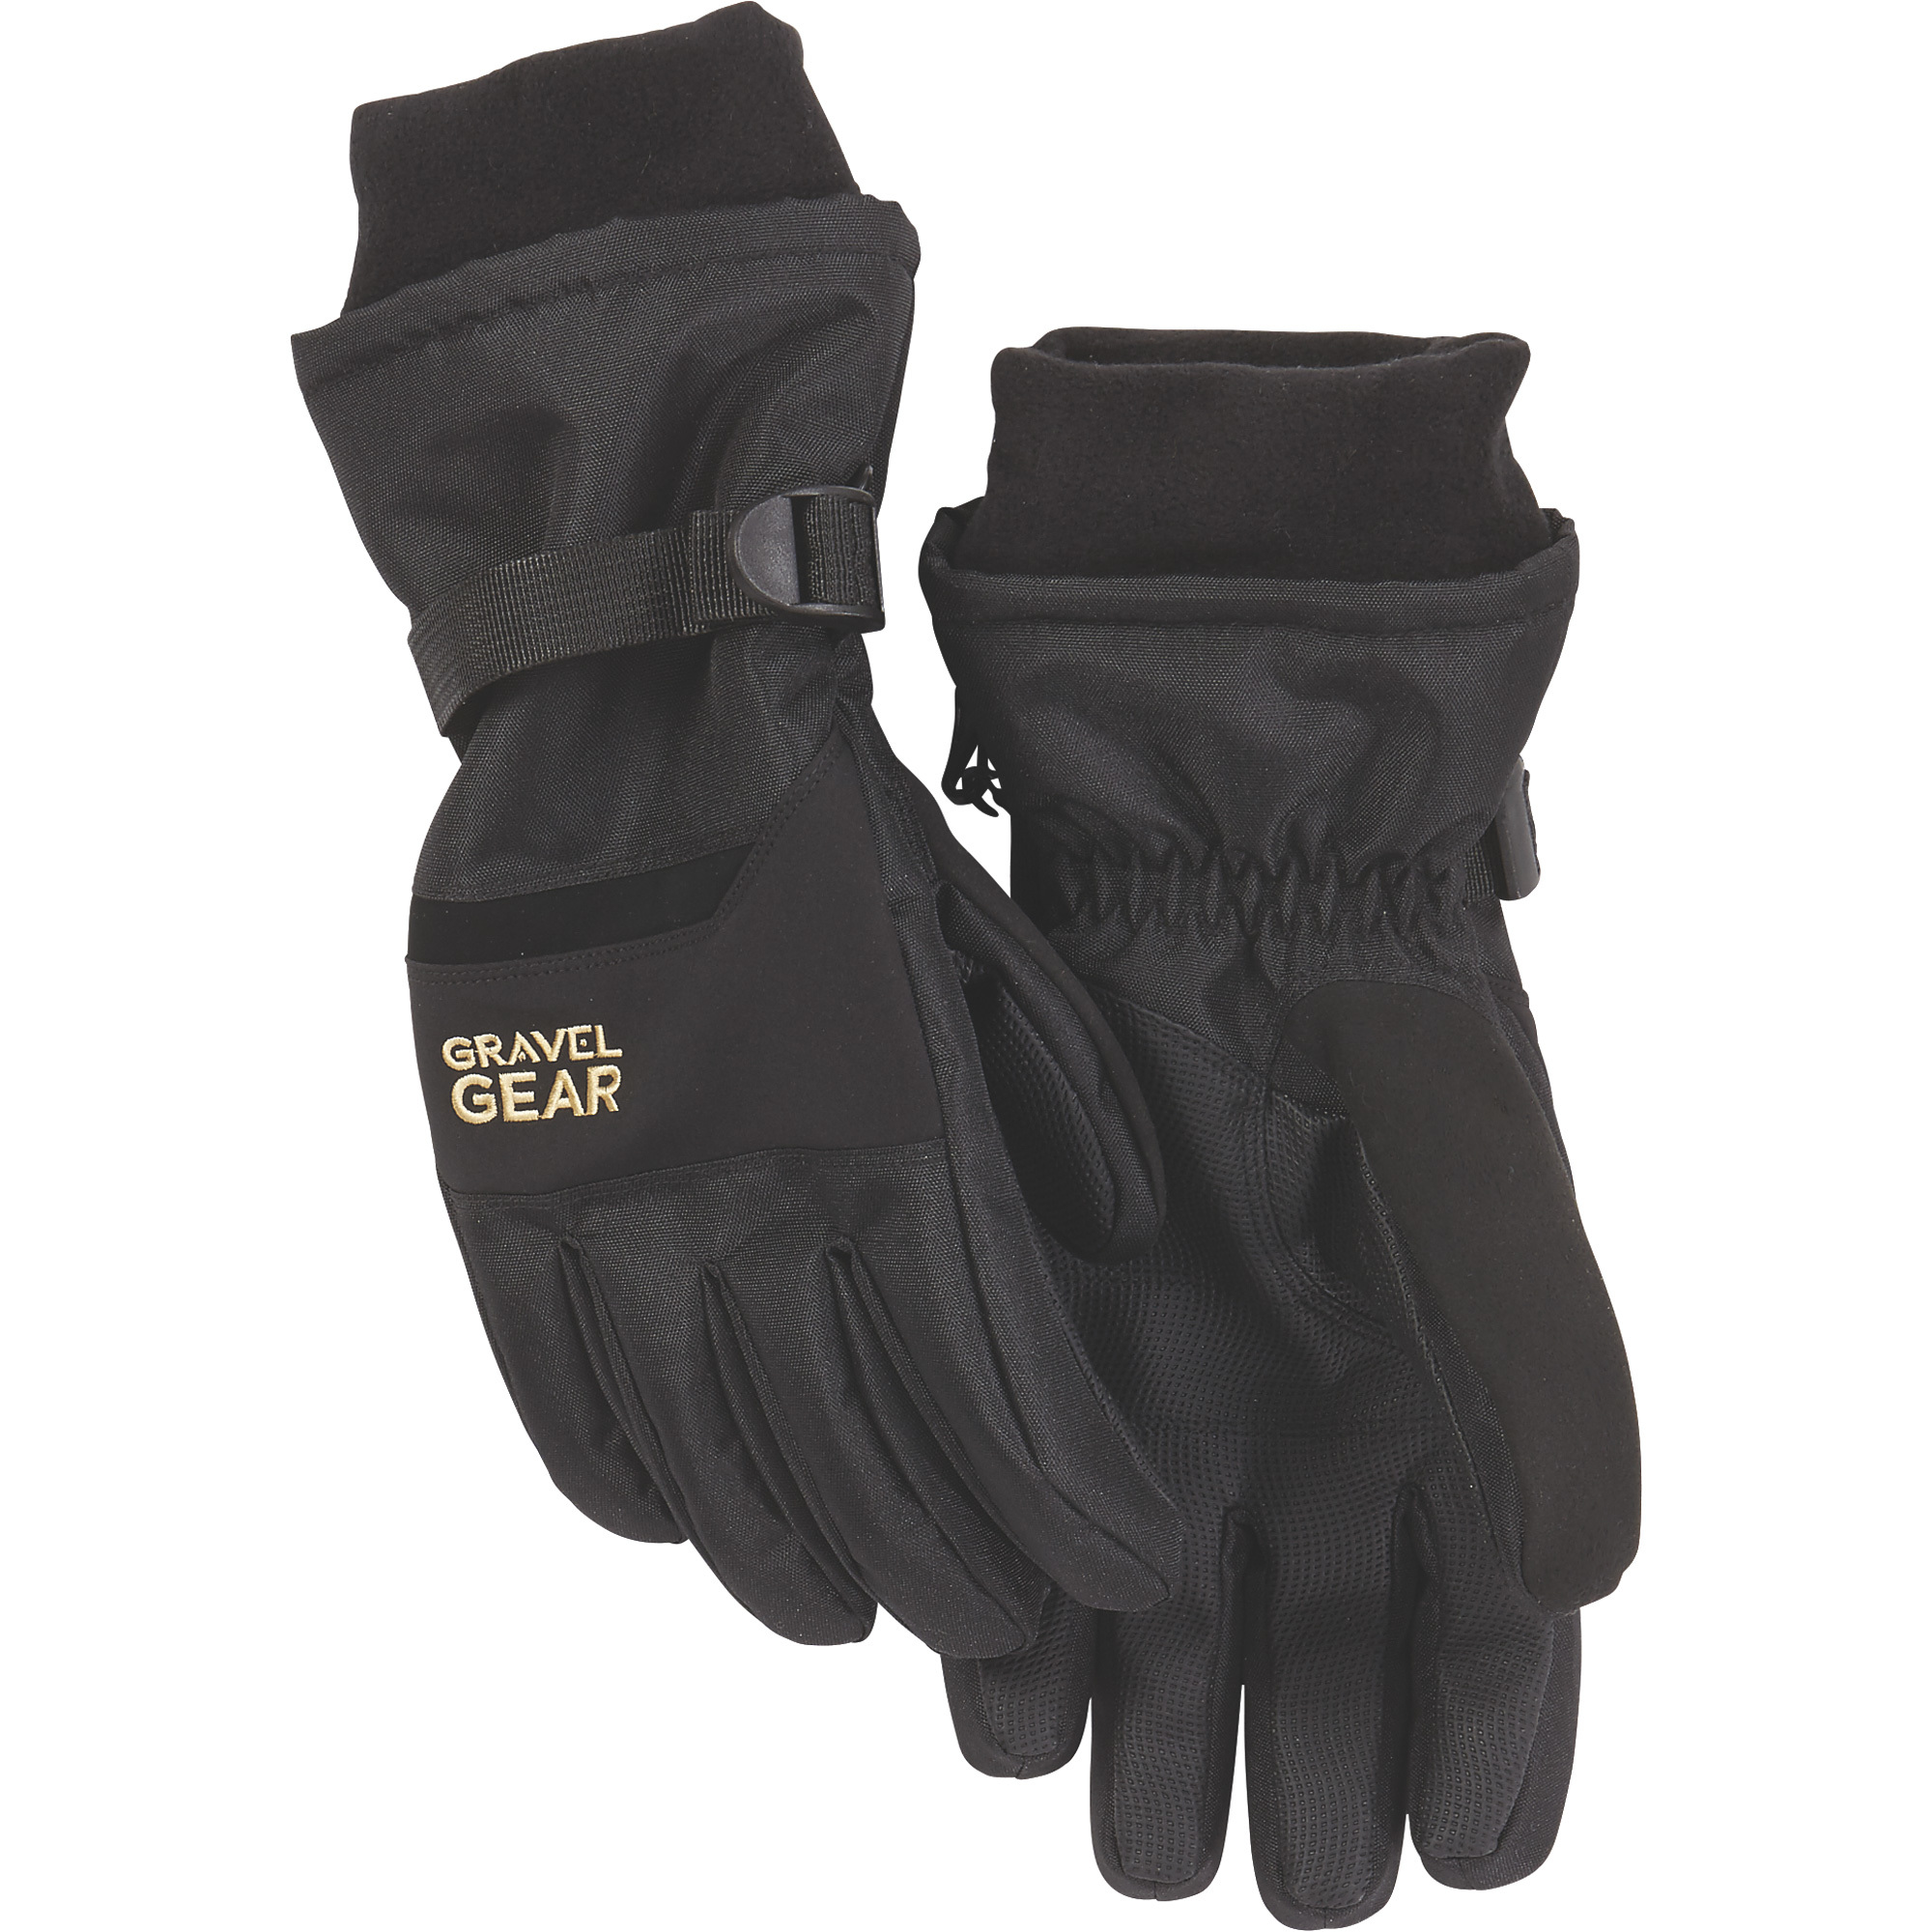 Gravel Gear Men's Waterproof Winter Gloves â Black, 2XL